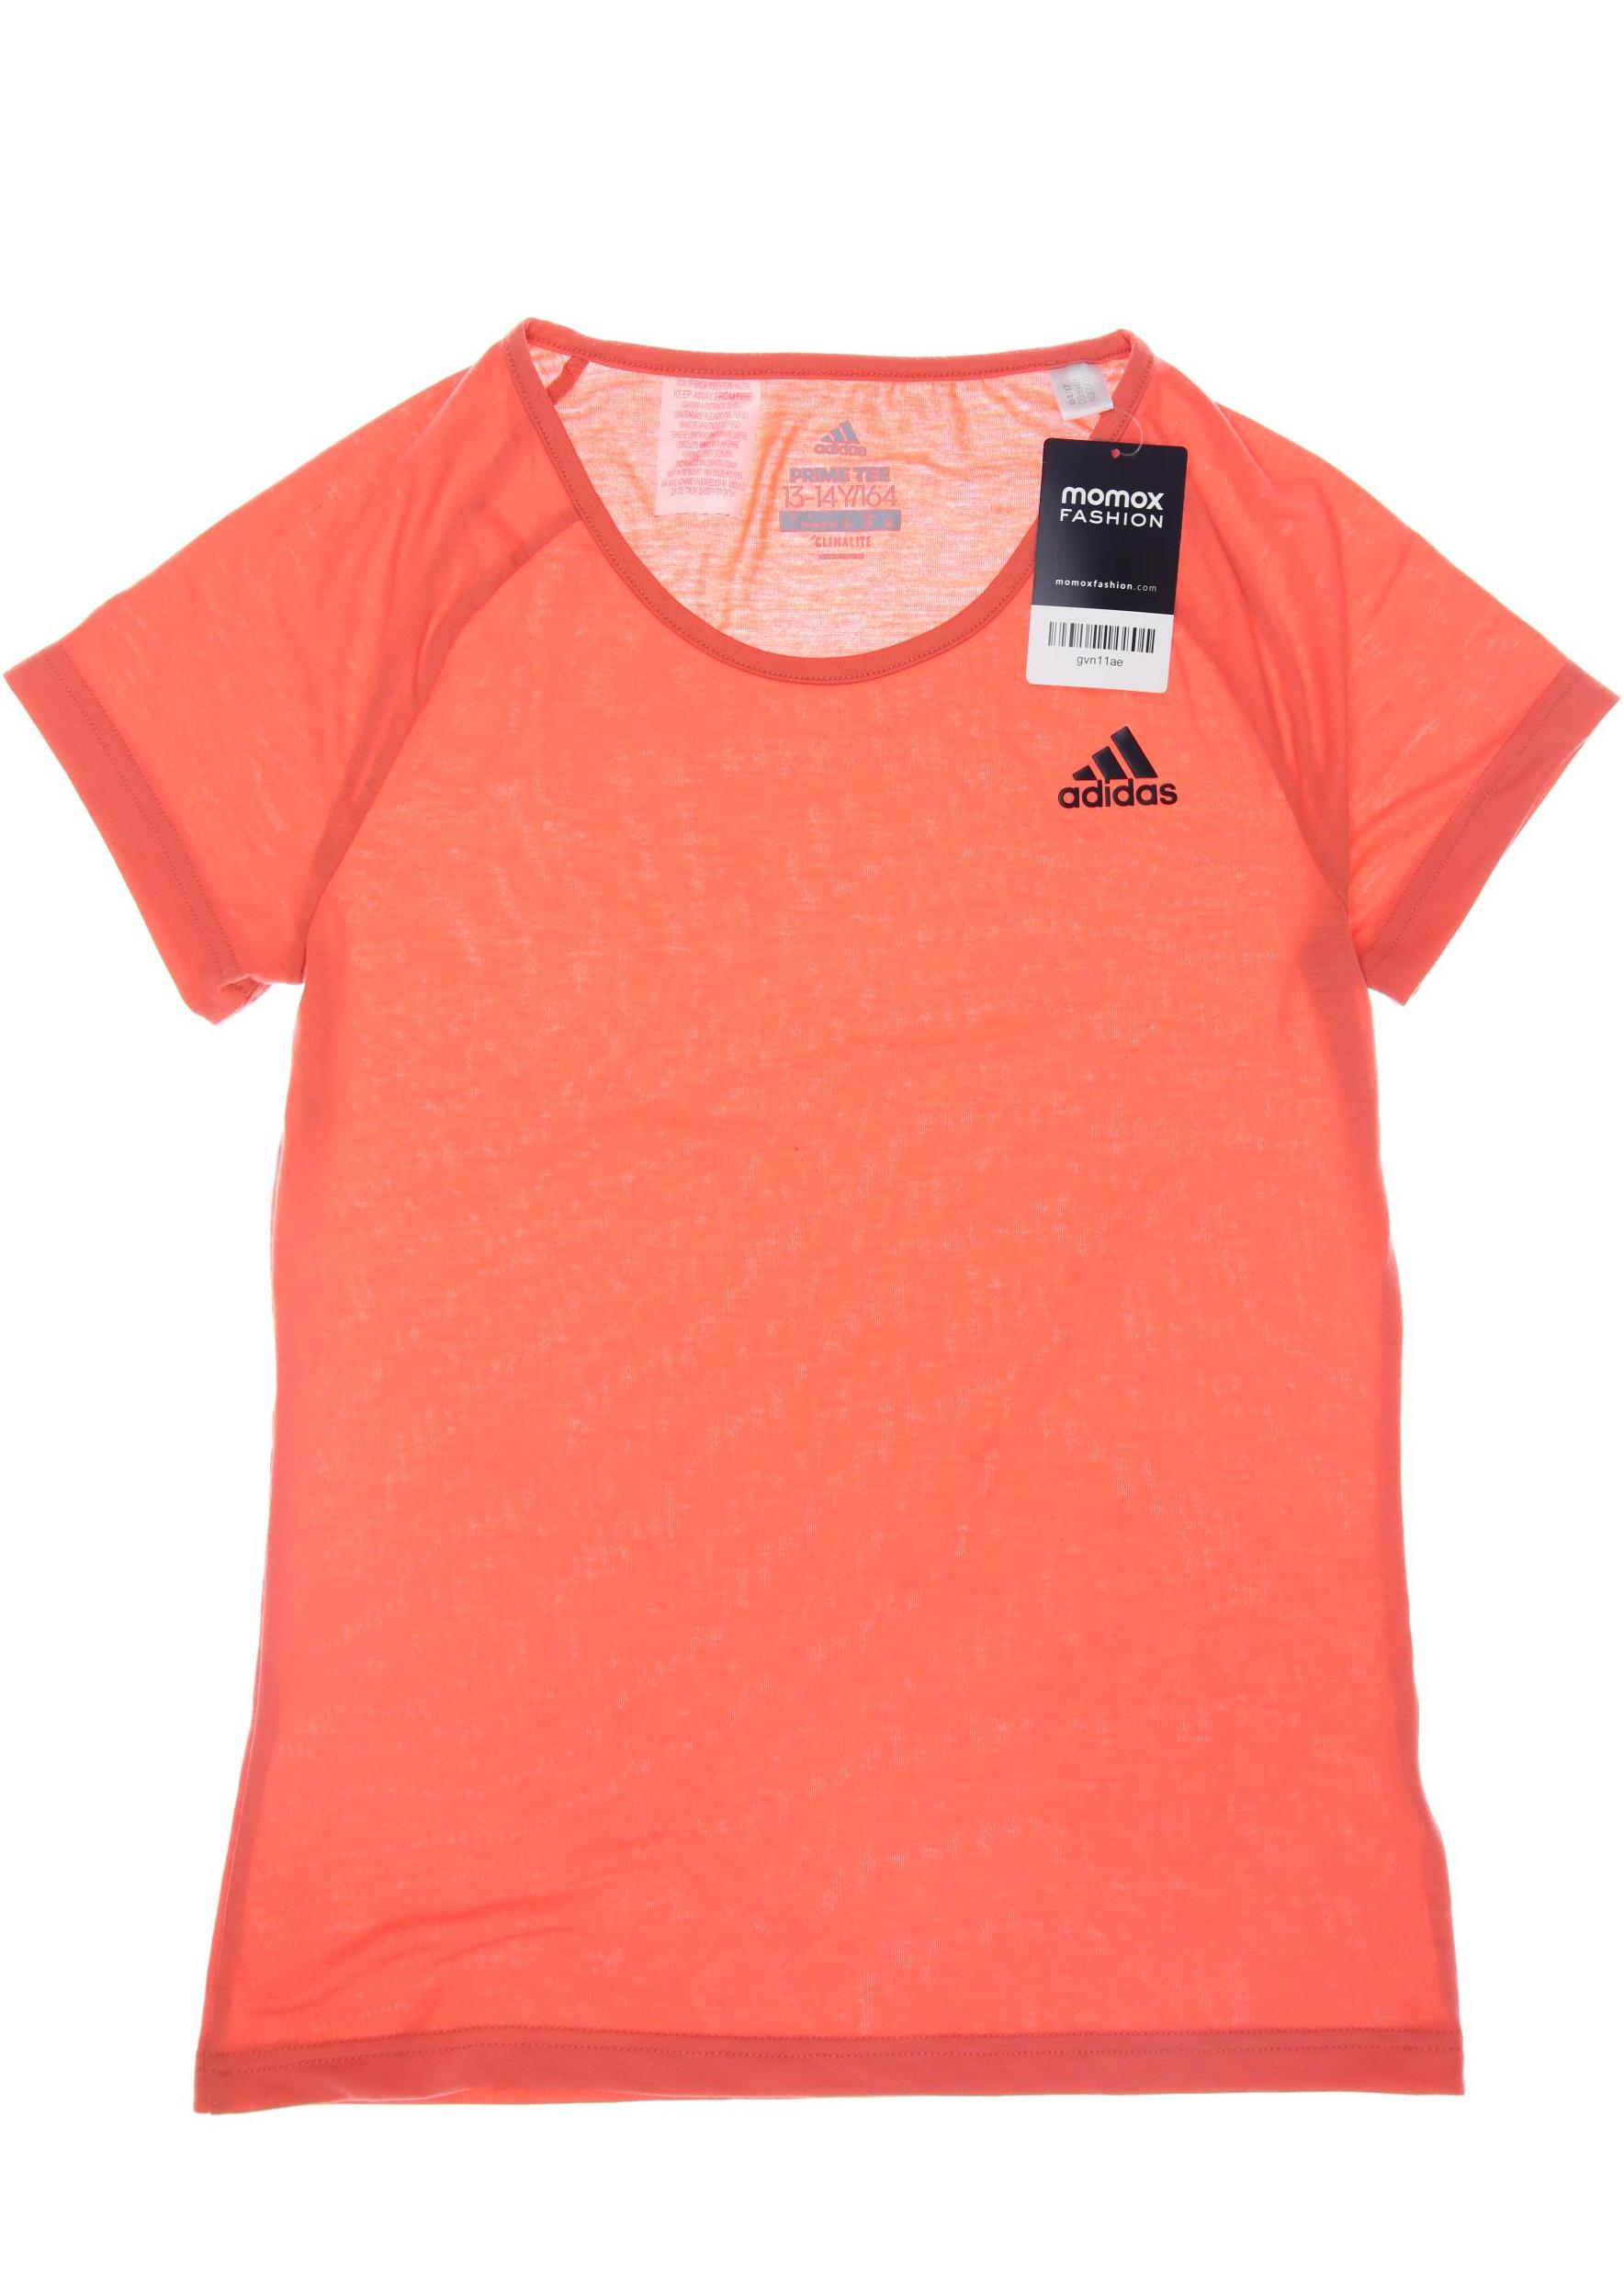 adidas Mädchen T-Shirt, orange von Adidas